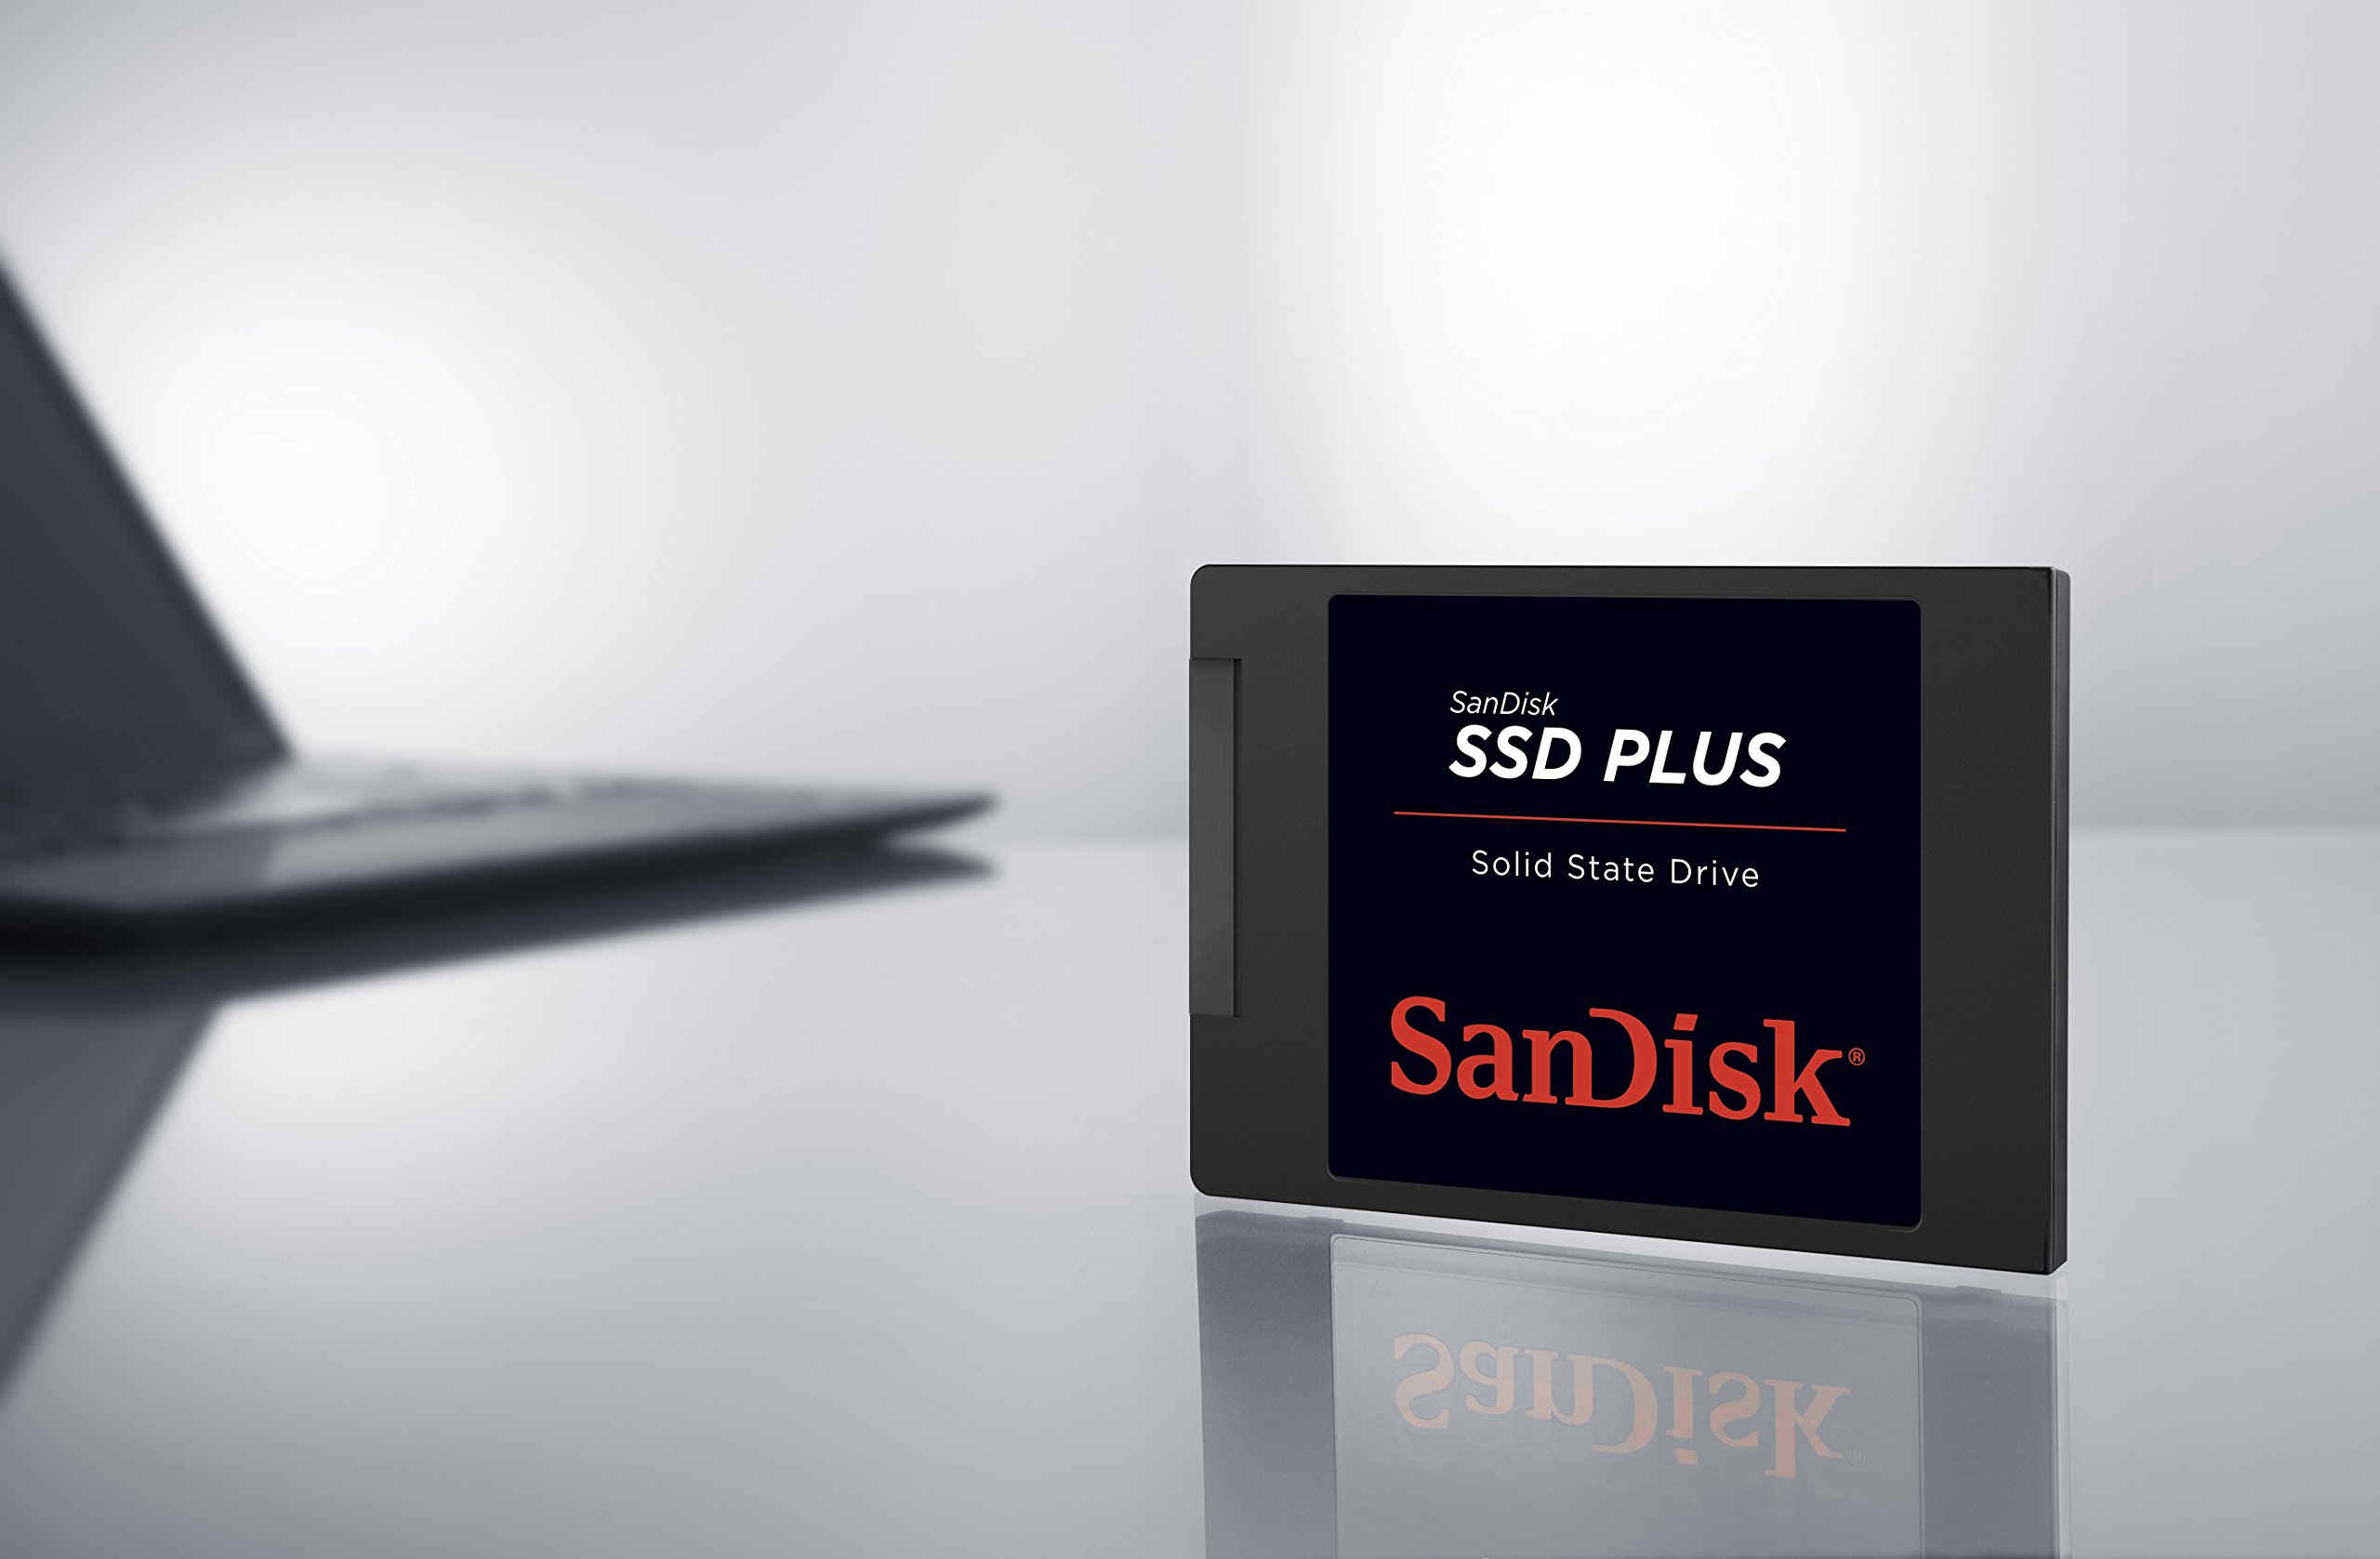 SanDisk SSD PLUS 1TB Internal SSD - SATA III 6 Gb/s, 2.5